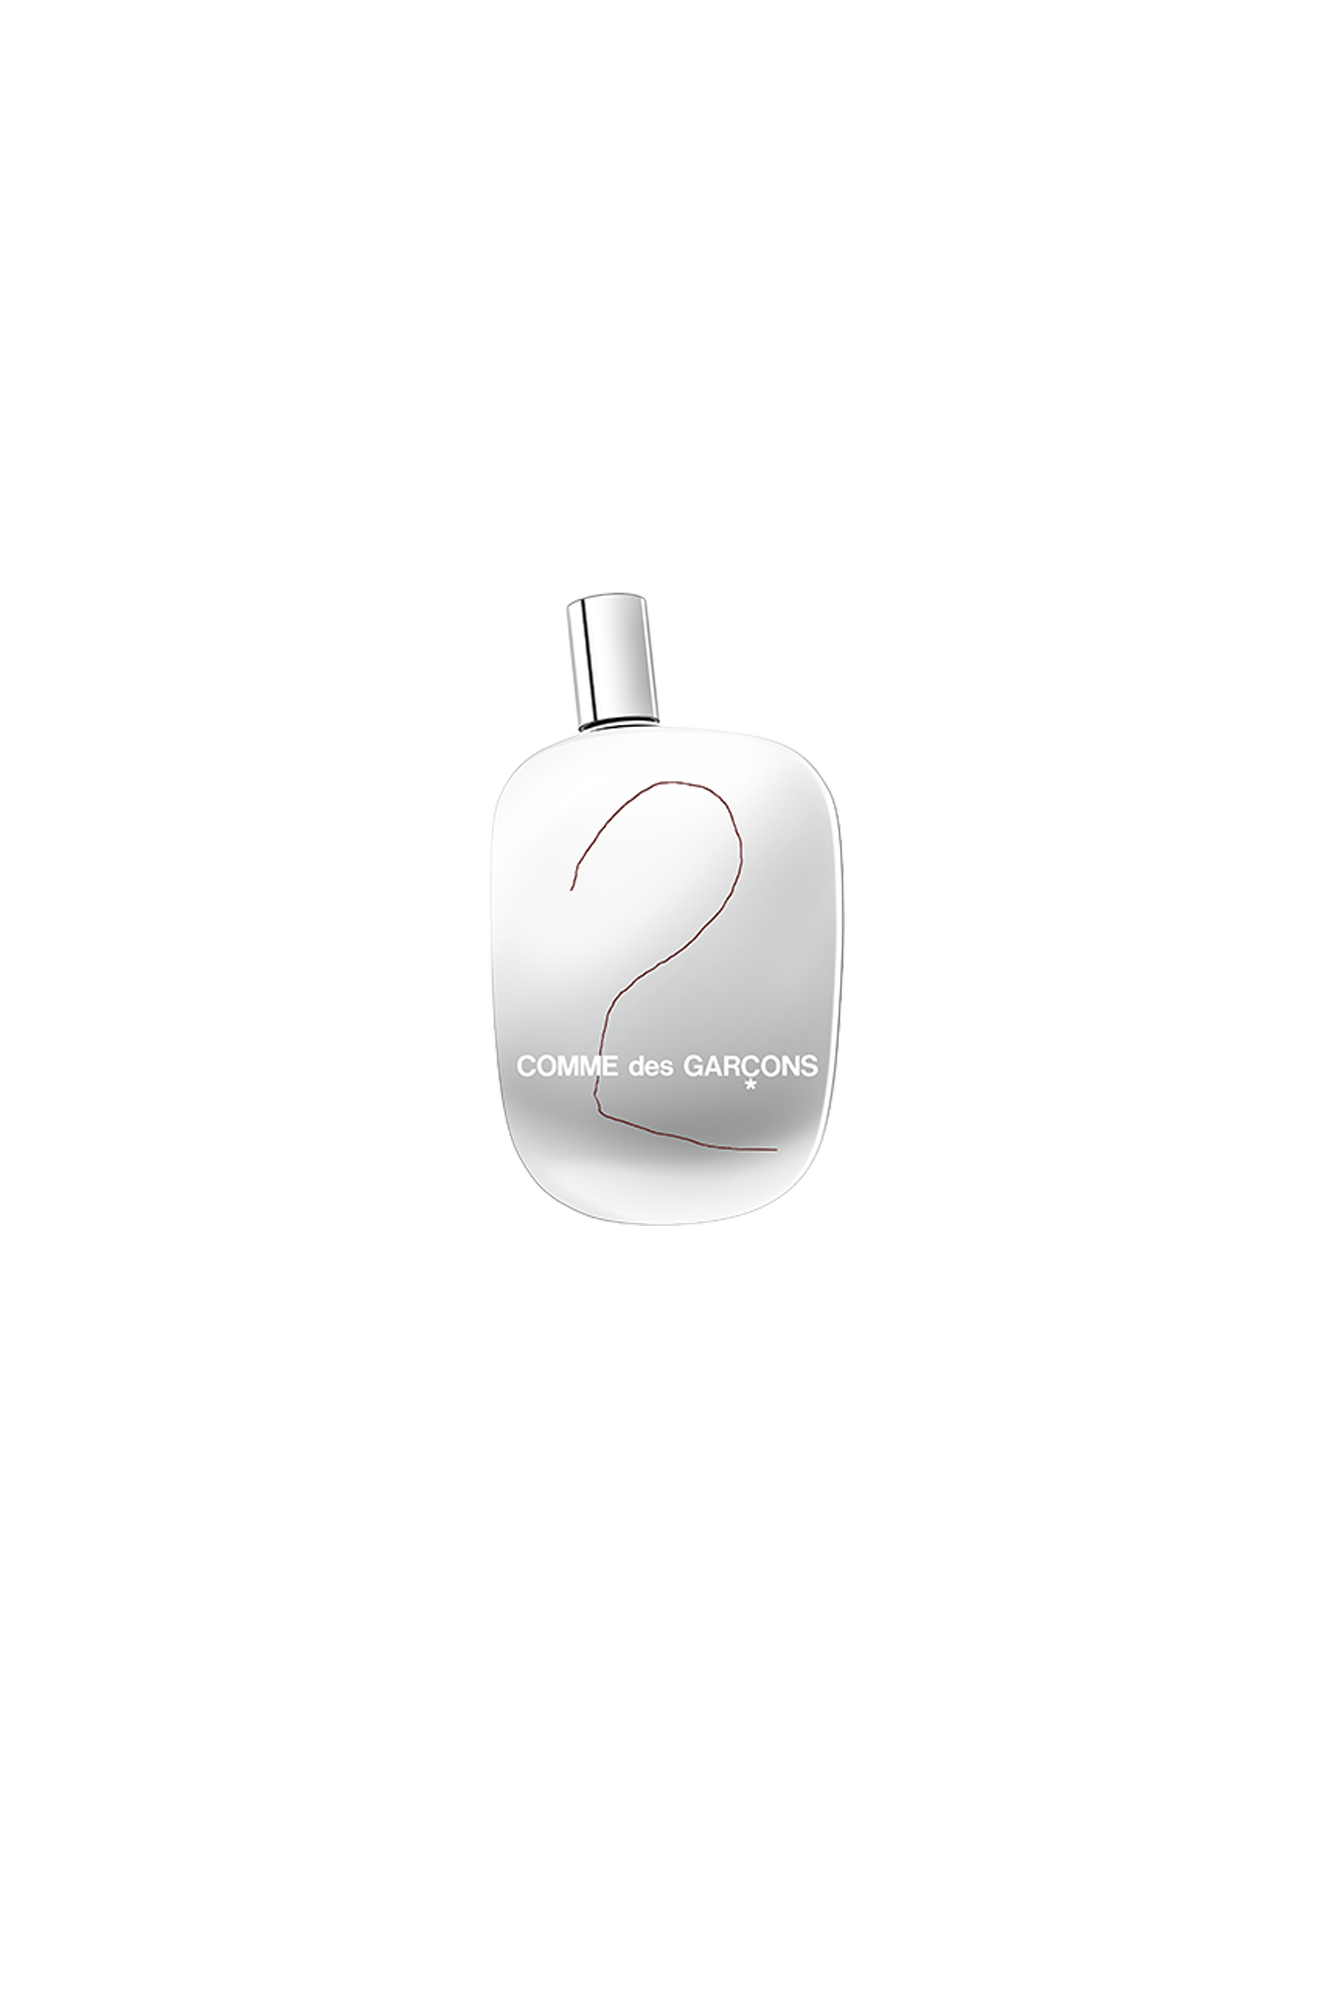 Comme Des Garçons Parfum Oggetti Comme Des Garcons 2 100 ml Eau de Parfum Multicolore 6091160#000#EDP#OS - One Block Down